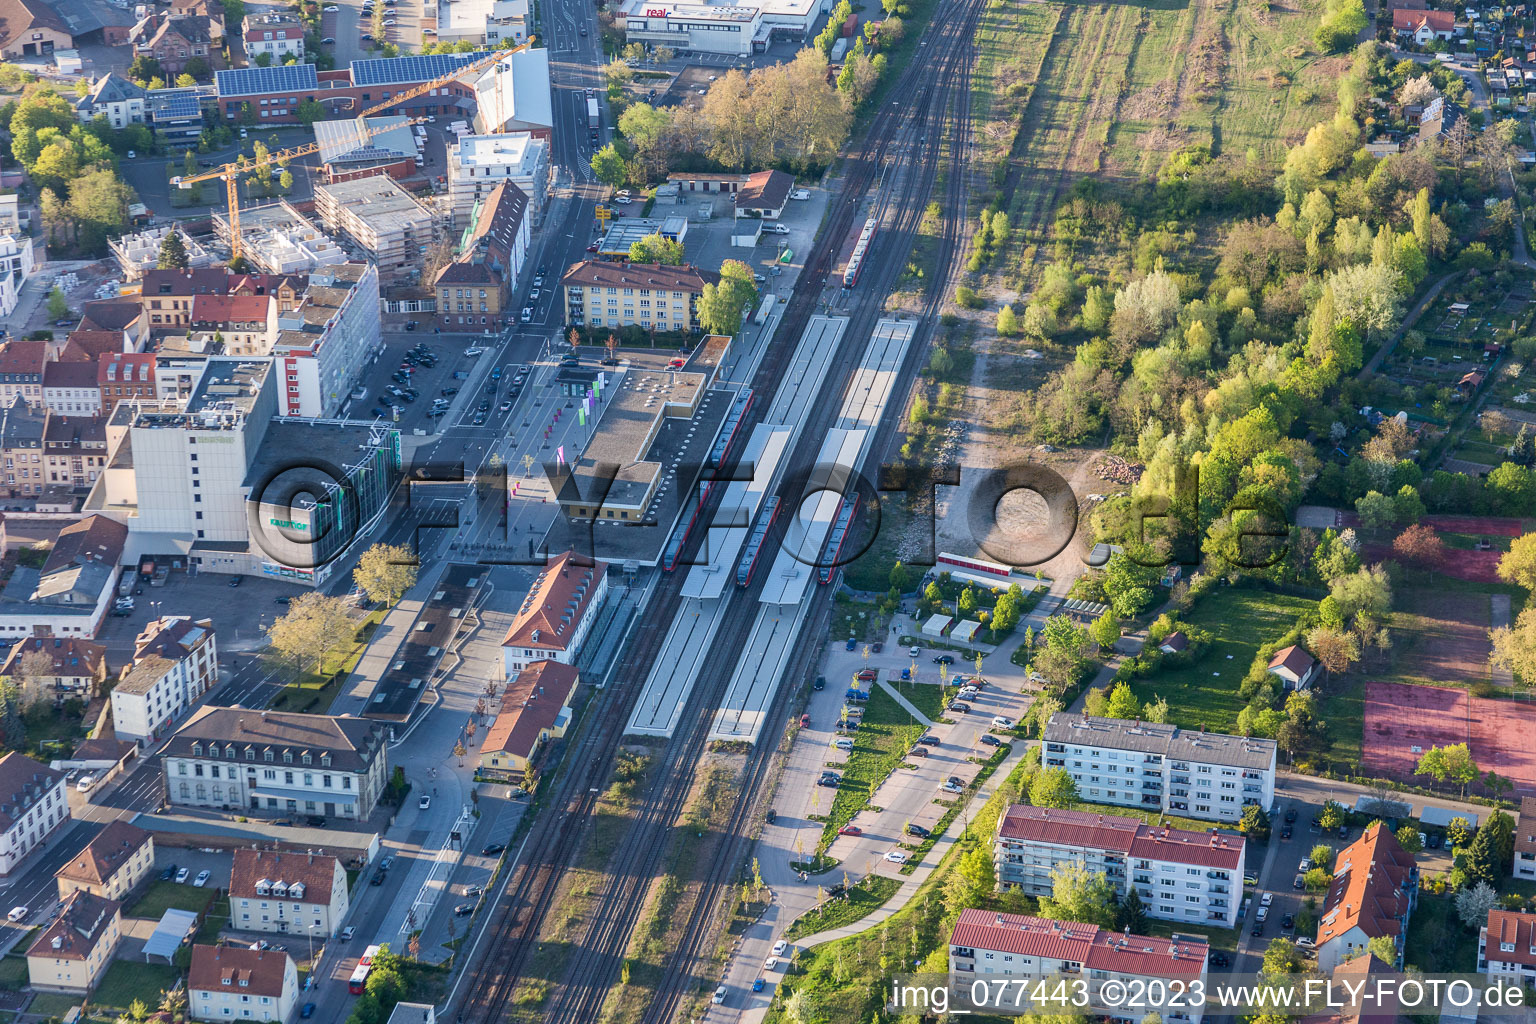 Gleisverlauf und Gebäude des Hauptbahnhofes der Deutschen Bahn in Landau in der Pfalz im Bundesland Rheinland-Pfalz, Deutschland